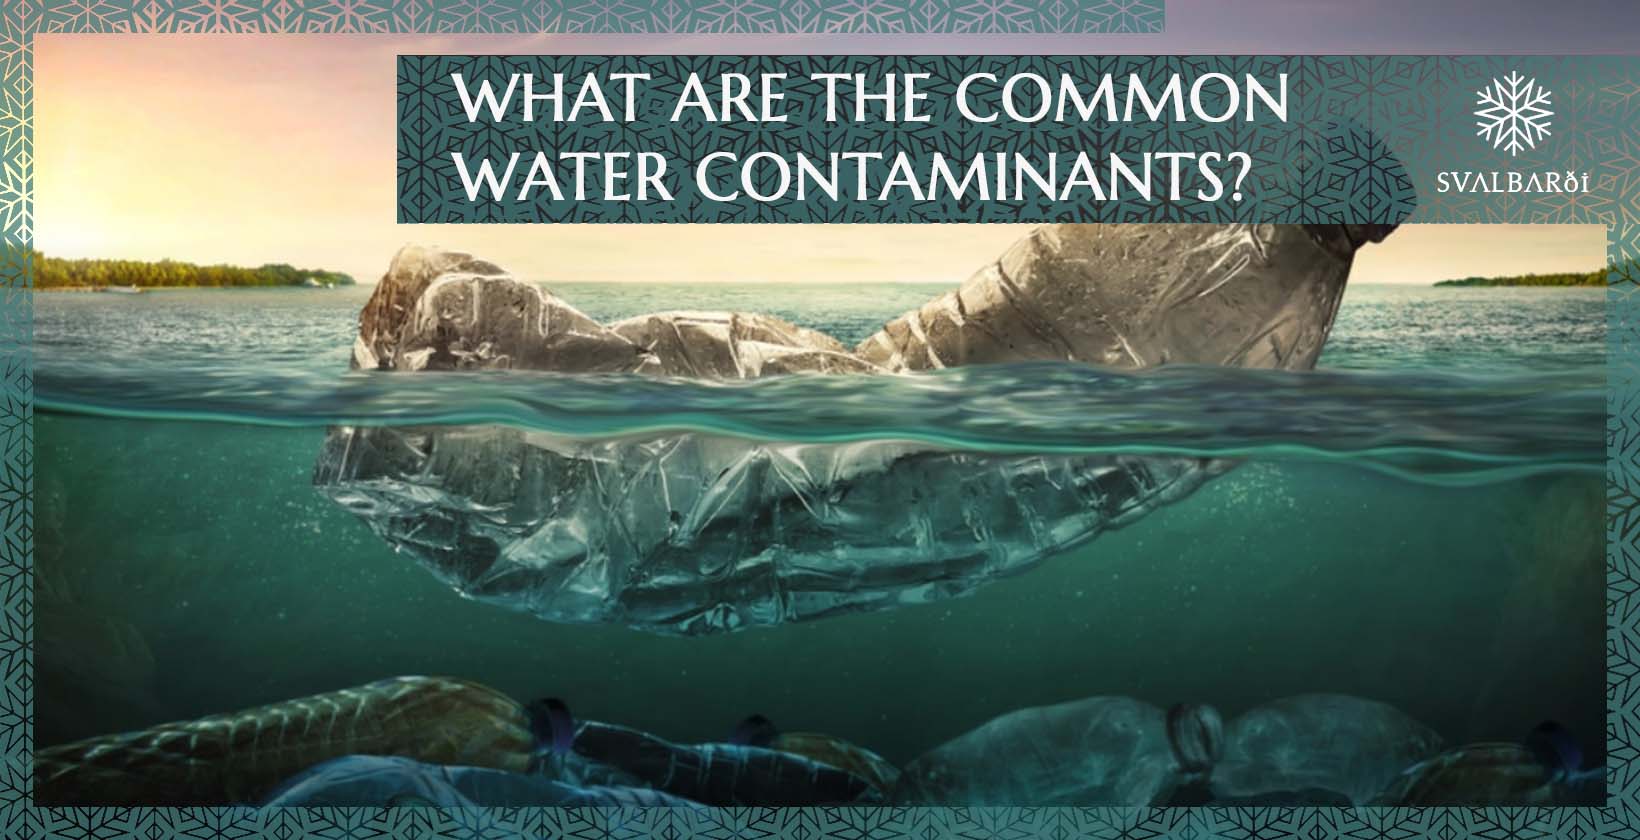 Water Contaminants